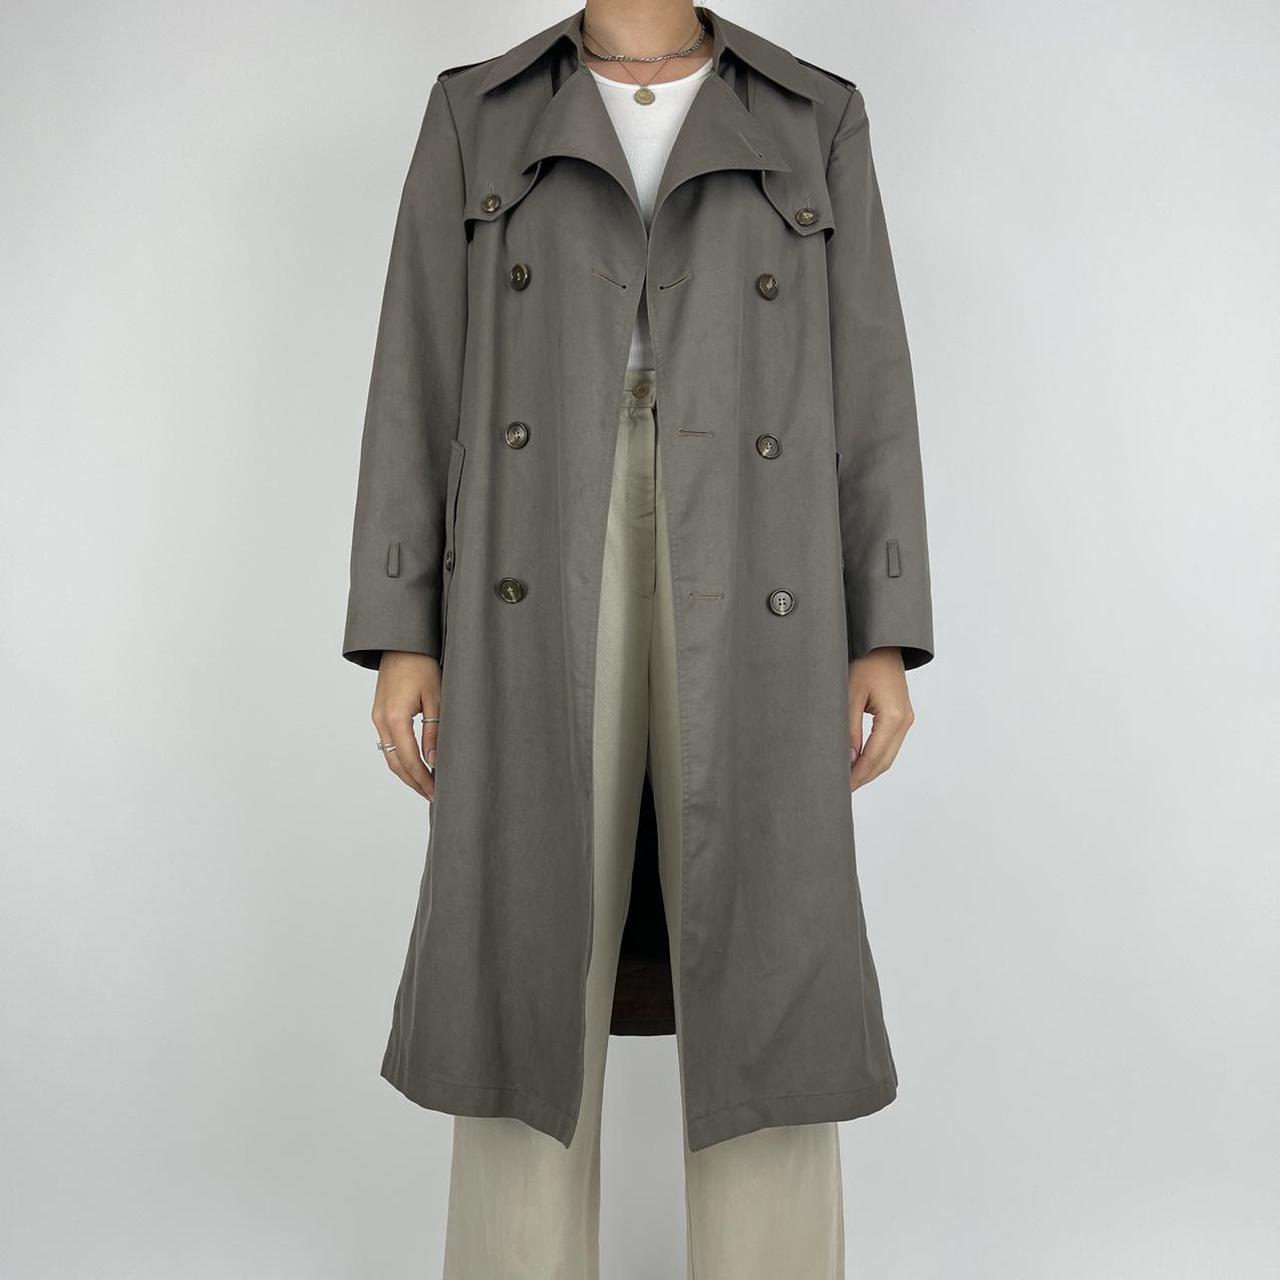 Christian Dior monsieur trench coat mac brown... - Depop